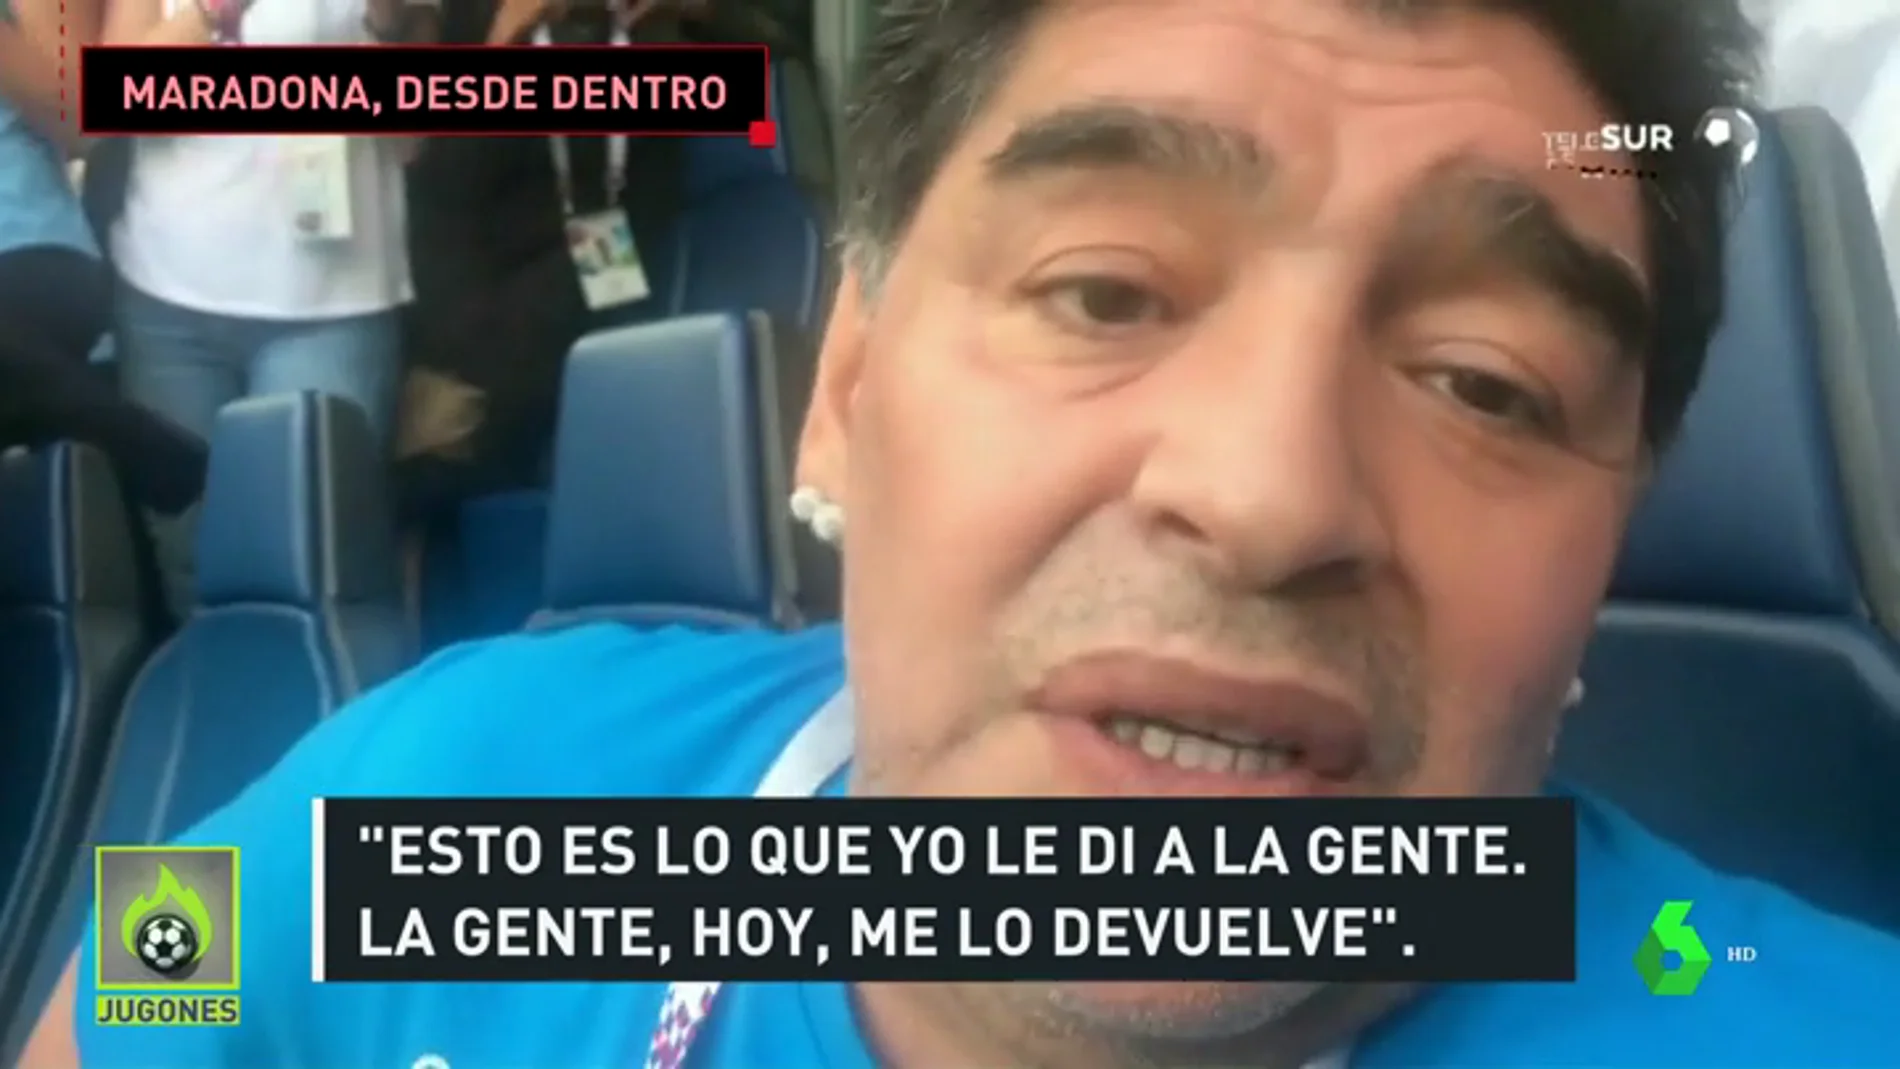 La 'fiesta' de Maradona en el Argentina-Nigeria, desde dentro